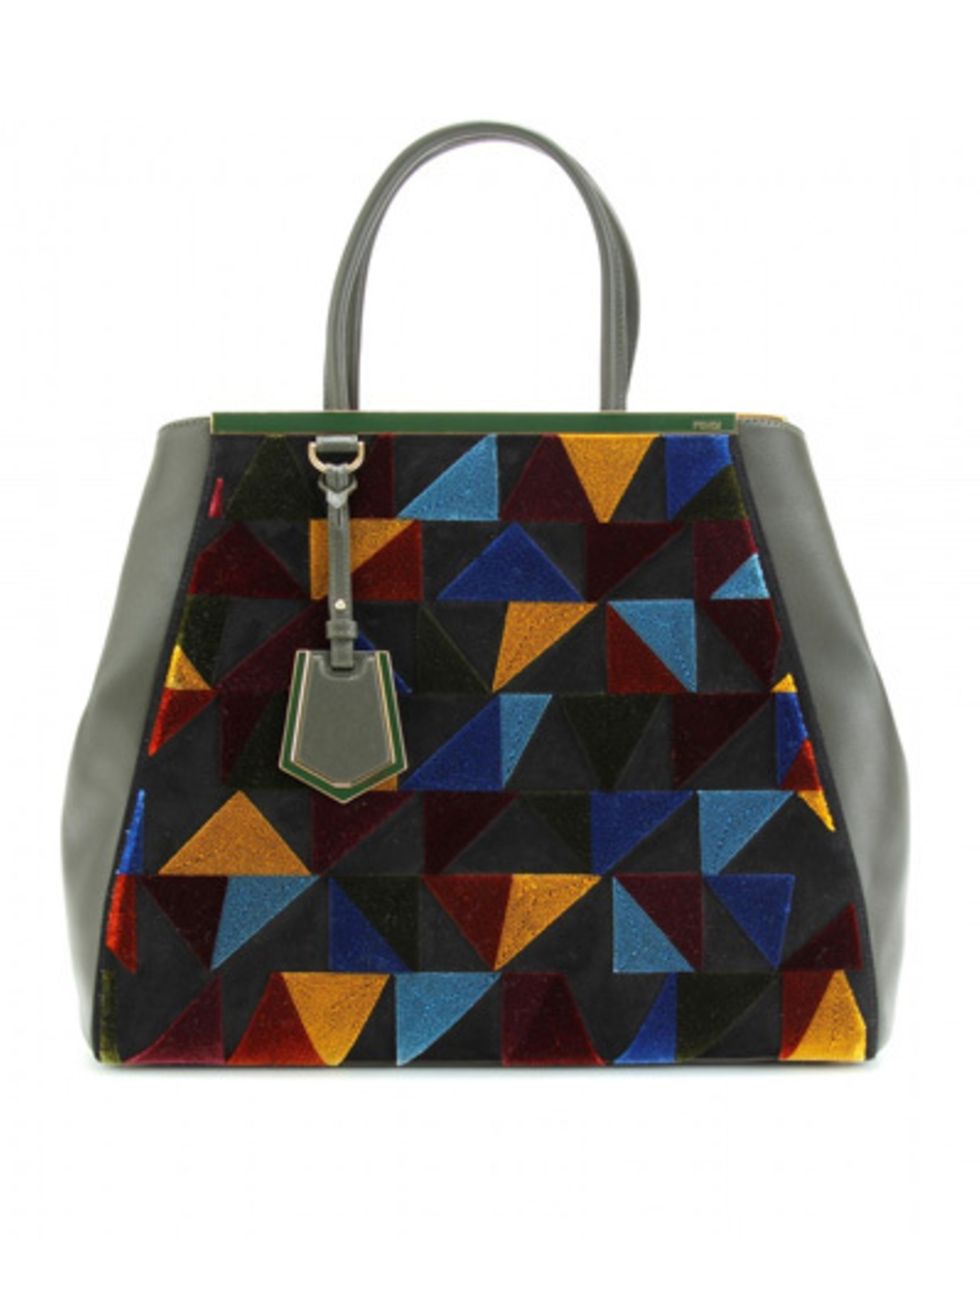 Product, Bag, Azure, Shoulder bag, Metal, Design, Silver, Strap, Handbag, Label, 